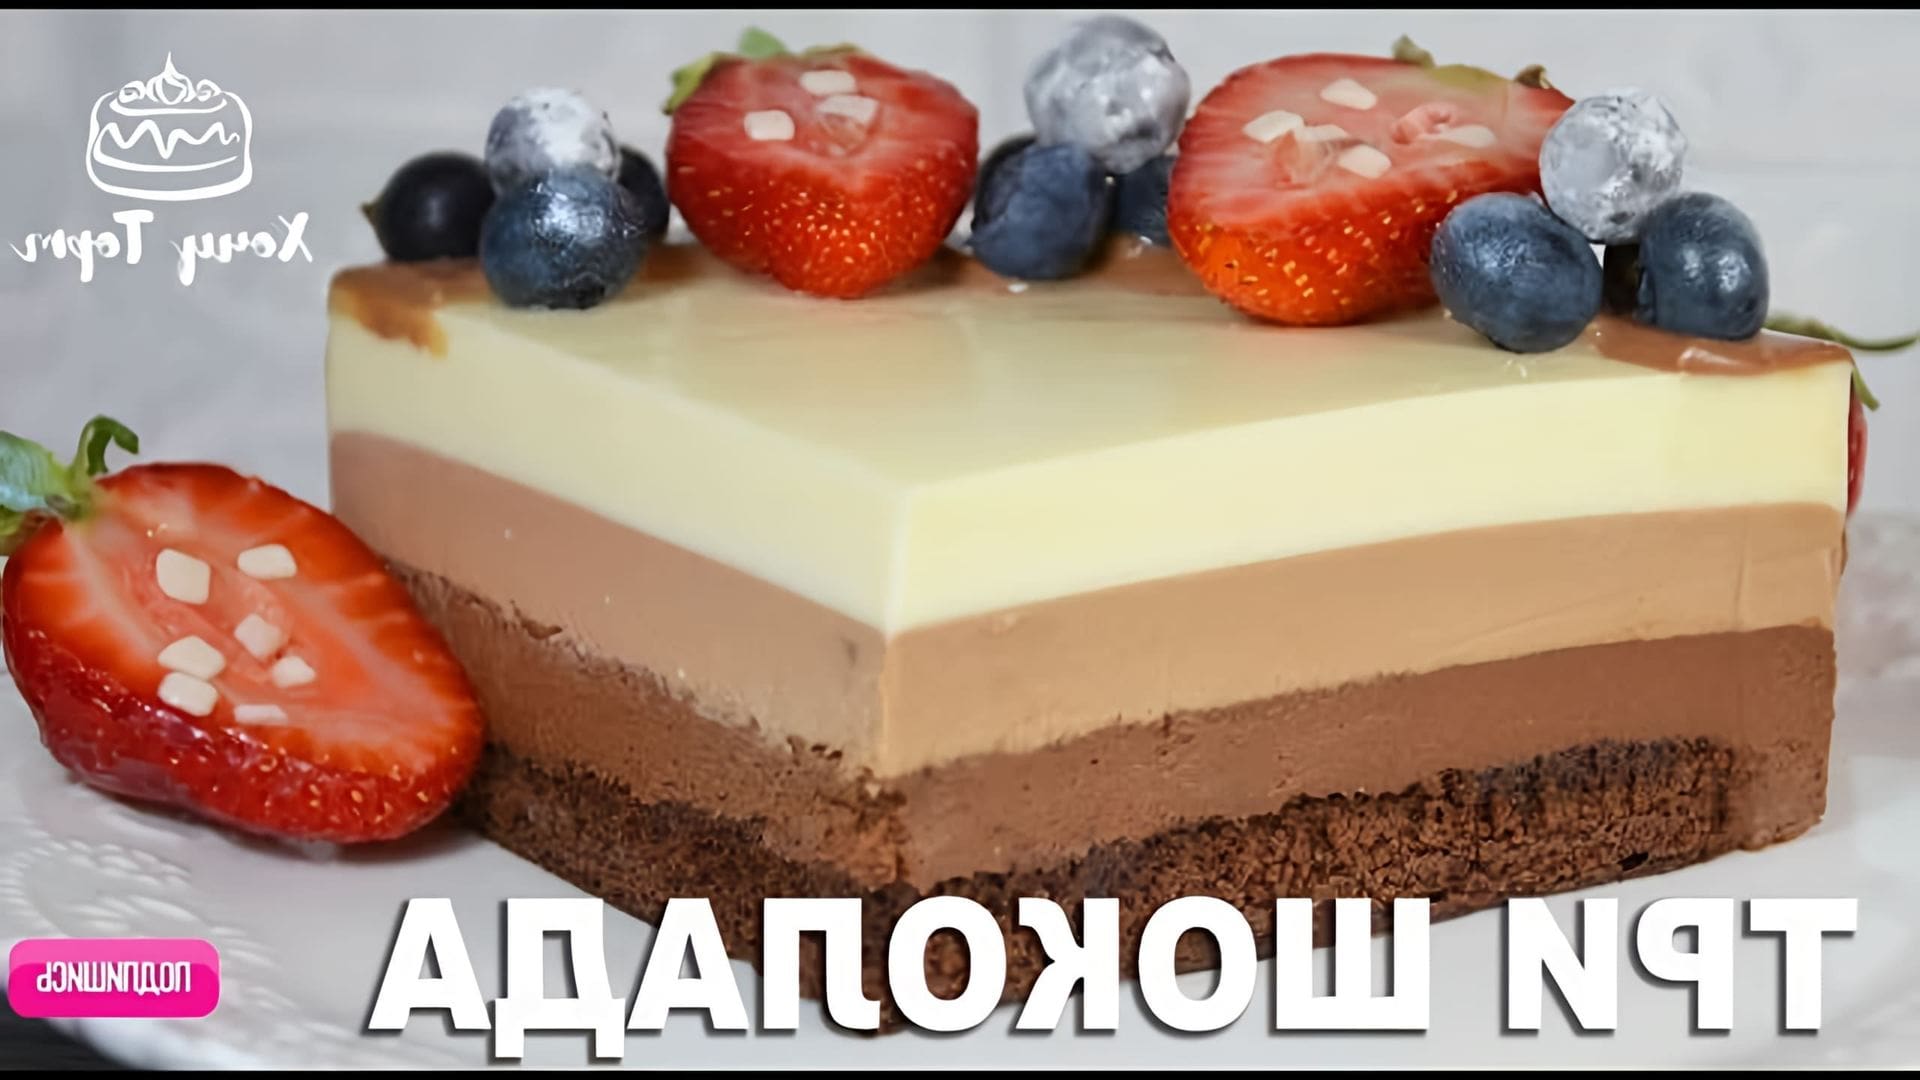 В этом видео демонстрируется рецепт приготовления муссового торта "Три шоколада"